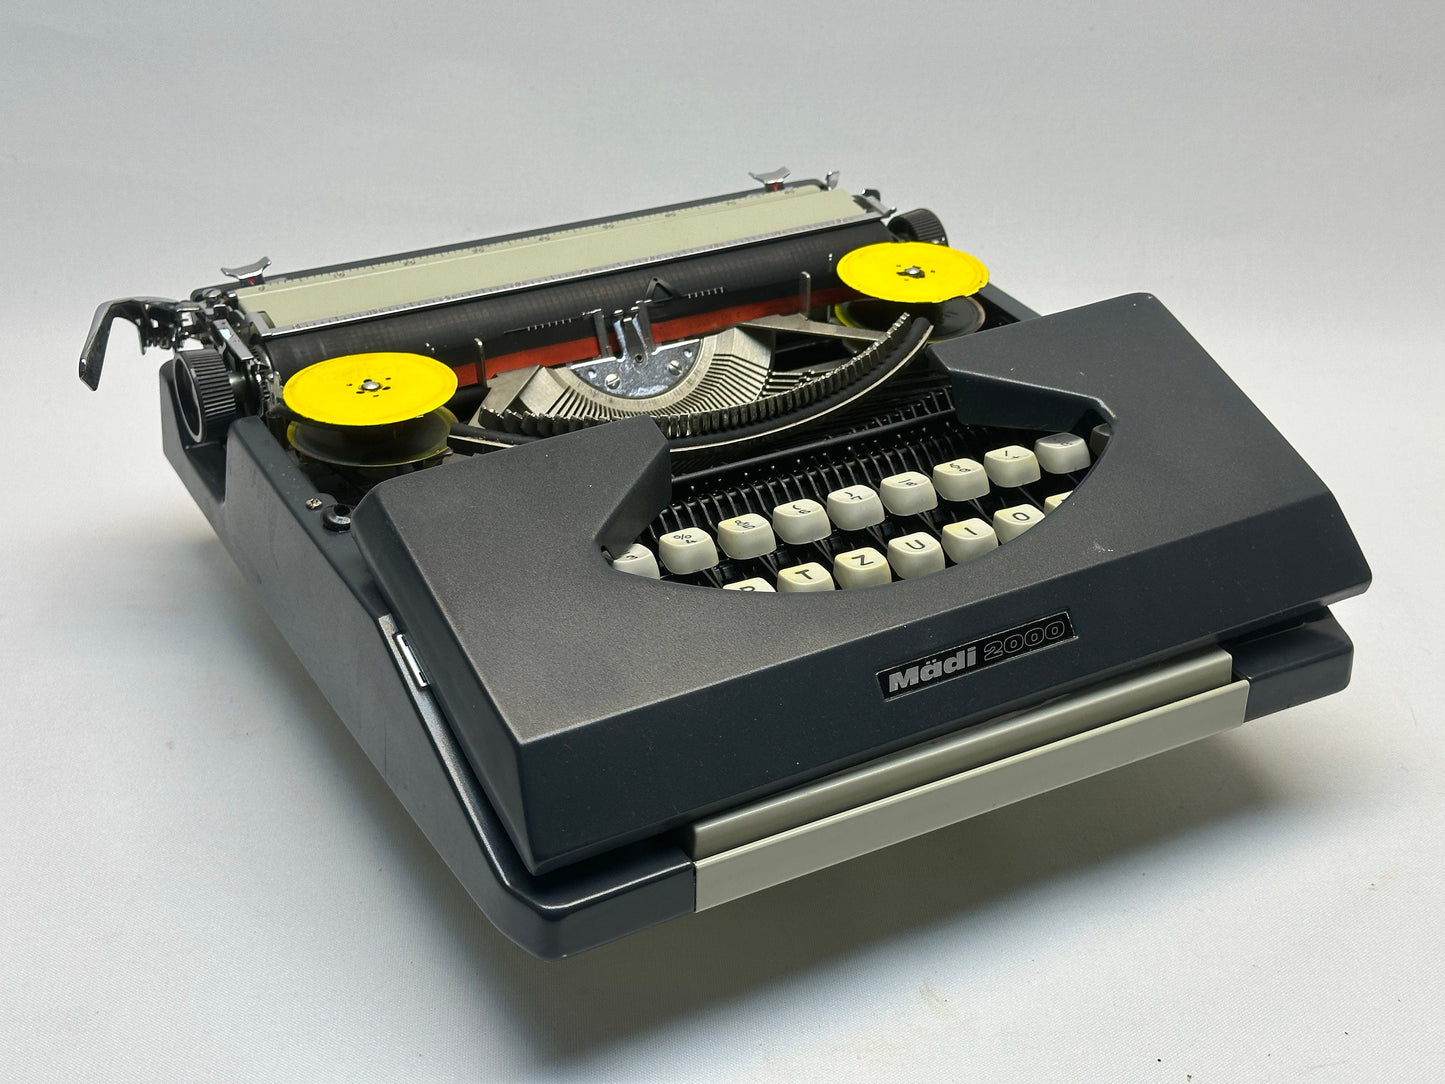 Madi2000 Black Typewriter with White Keyboard & Grey Bag,Antique Typewriter